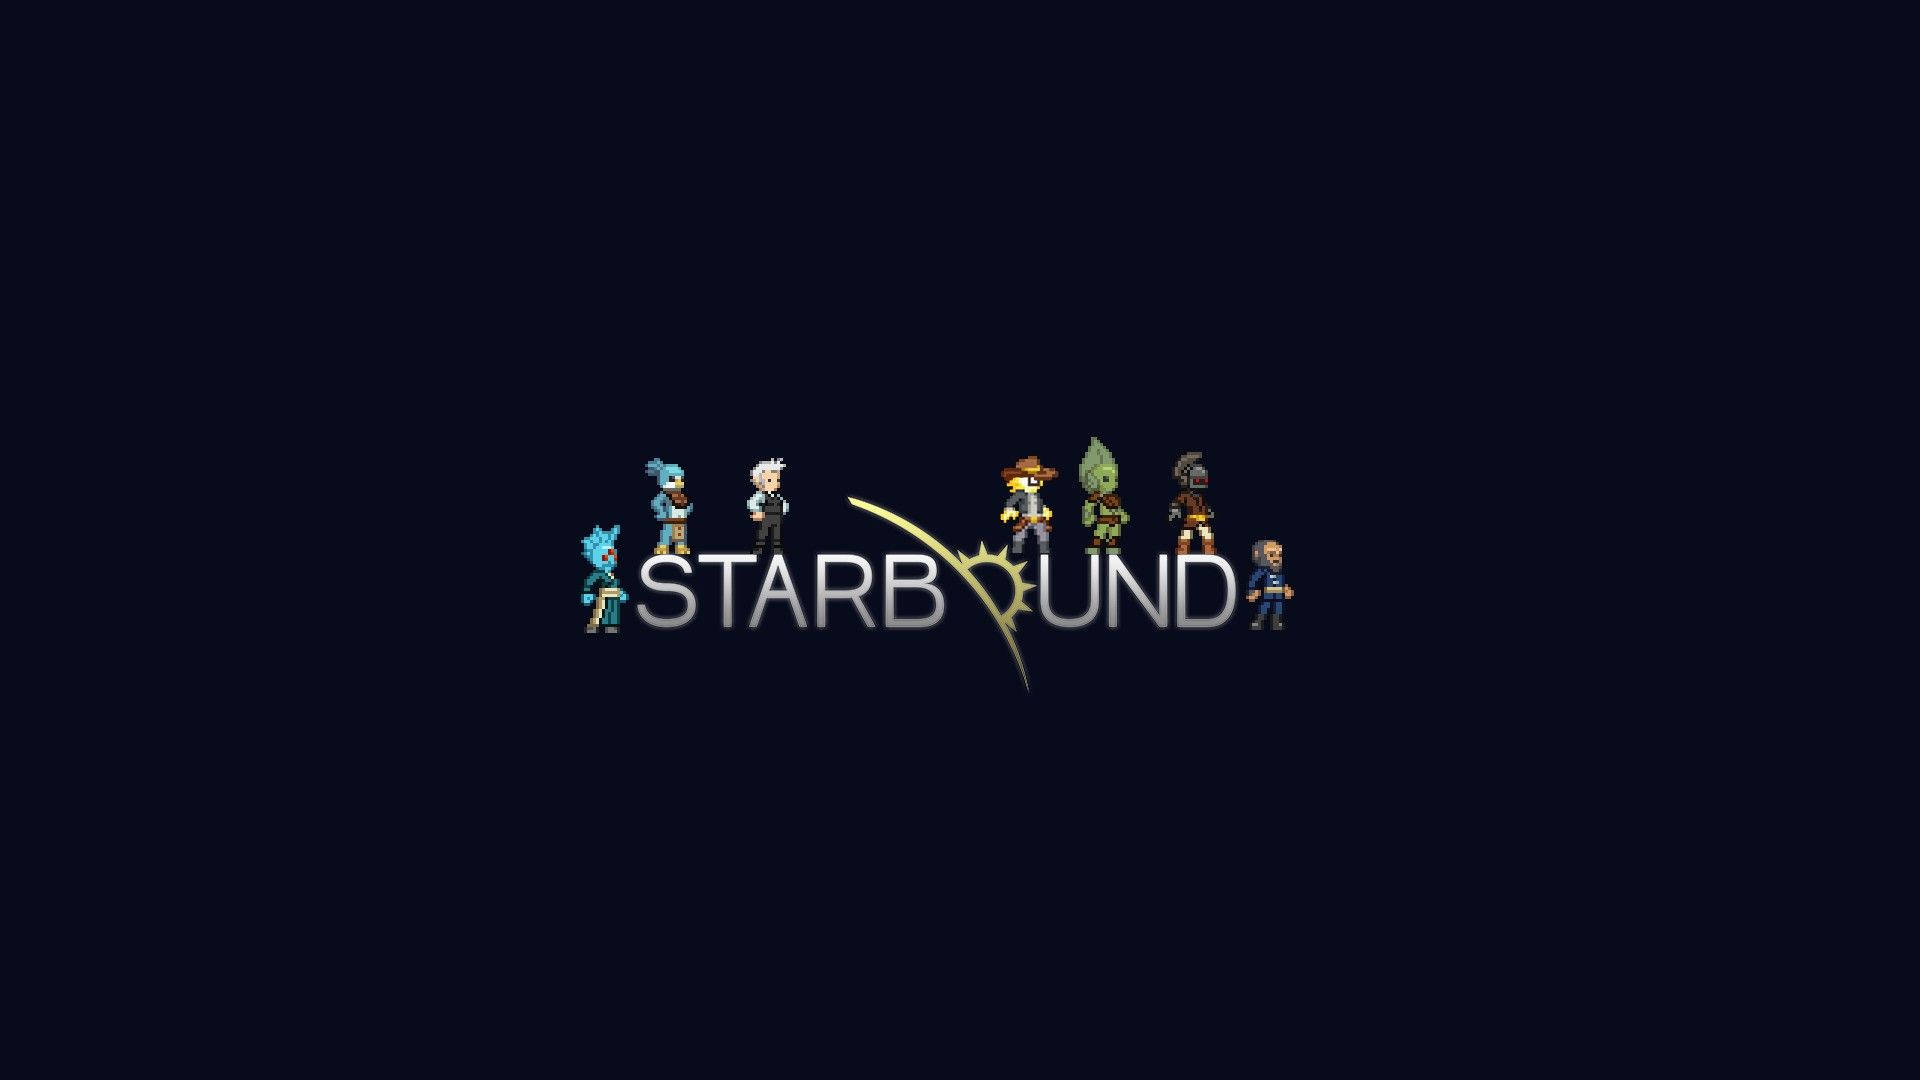 Starbound Windows 10 Wallpaper